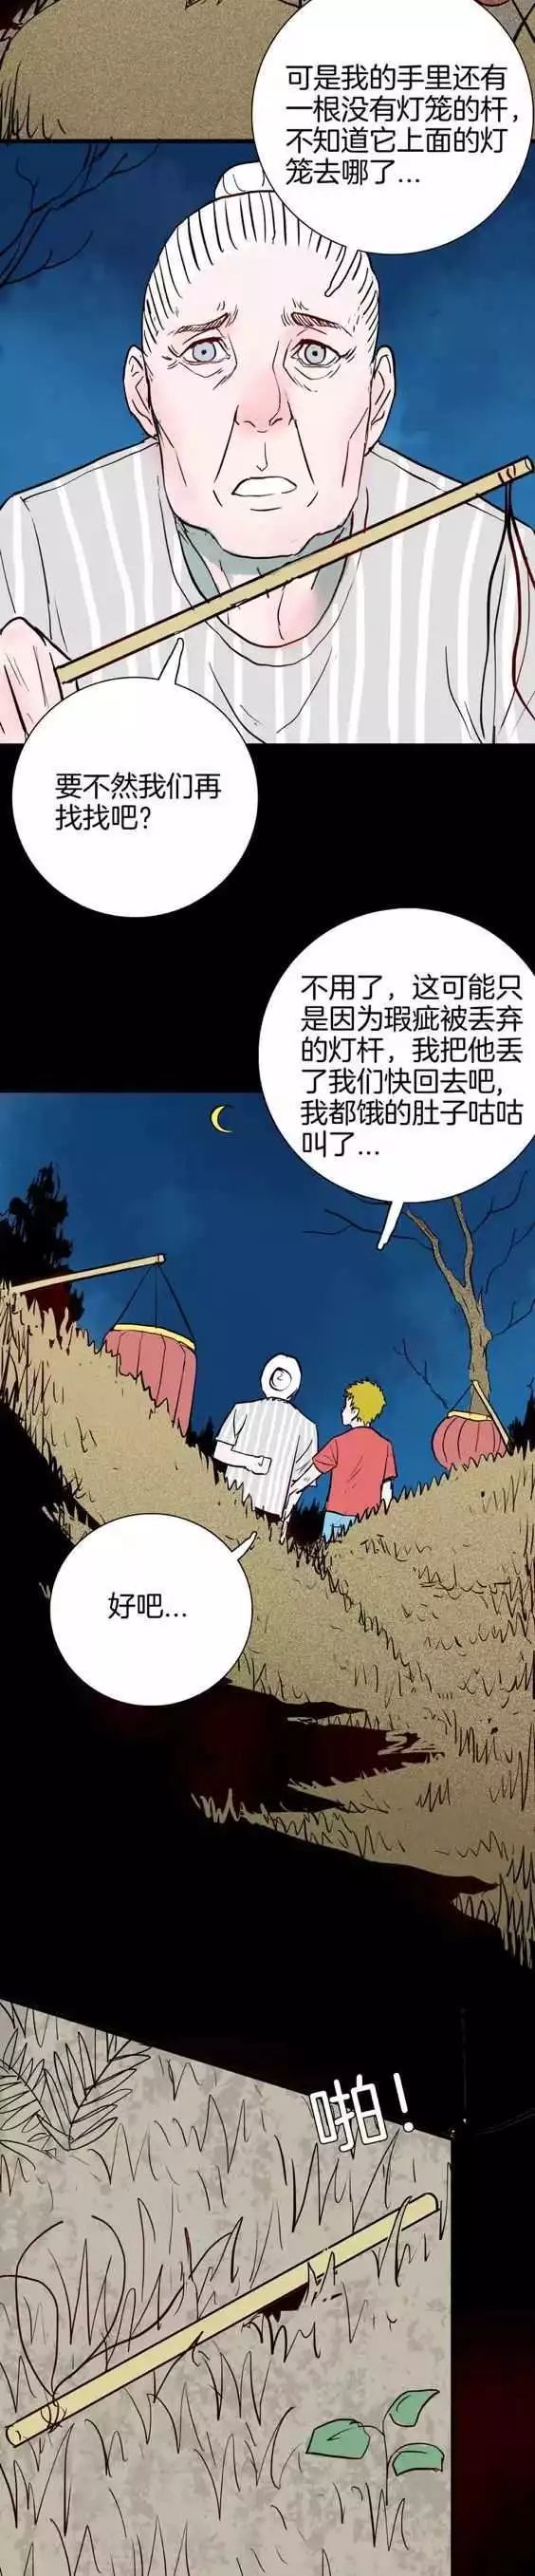 恐怖漫畫《元宵燈會》不能亂動的燈籠 靈異 第30張